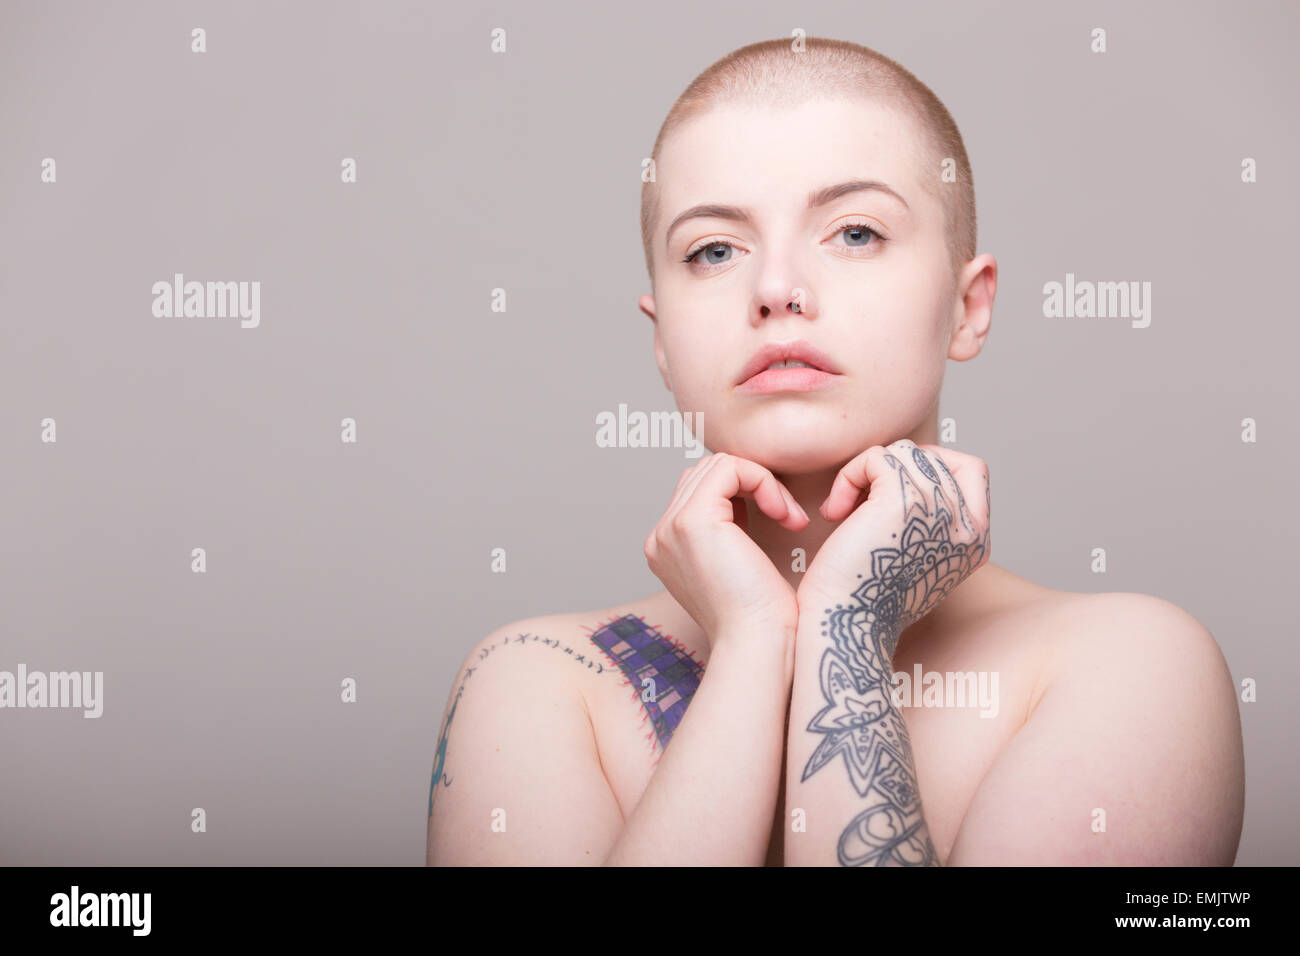 Una mujer joven con la cabeza rapada y tatuajes sobre su hombro, brazos y manos Foto de stock